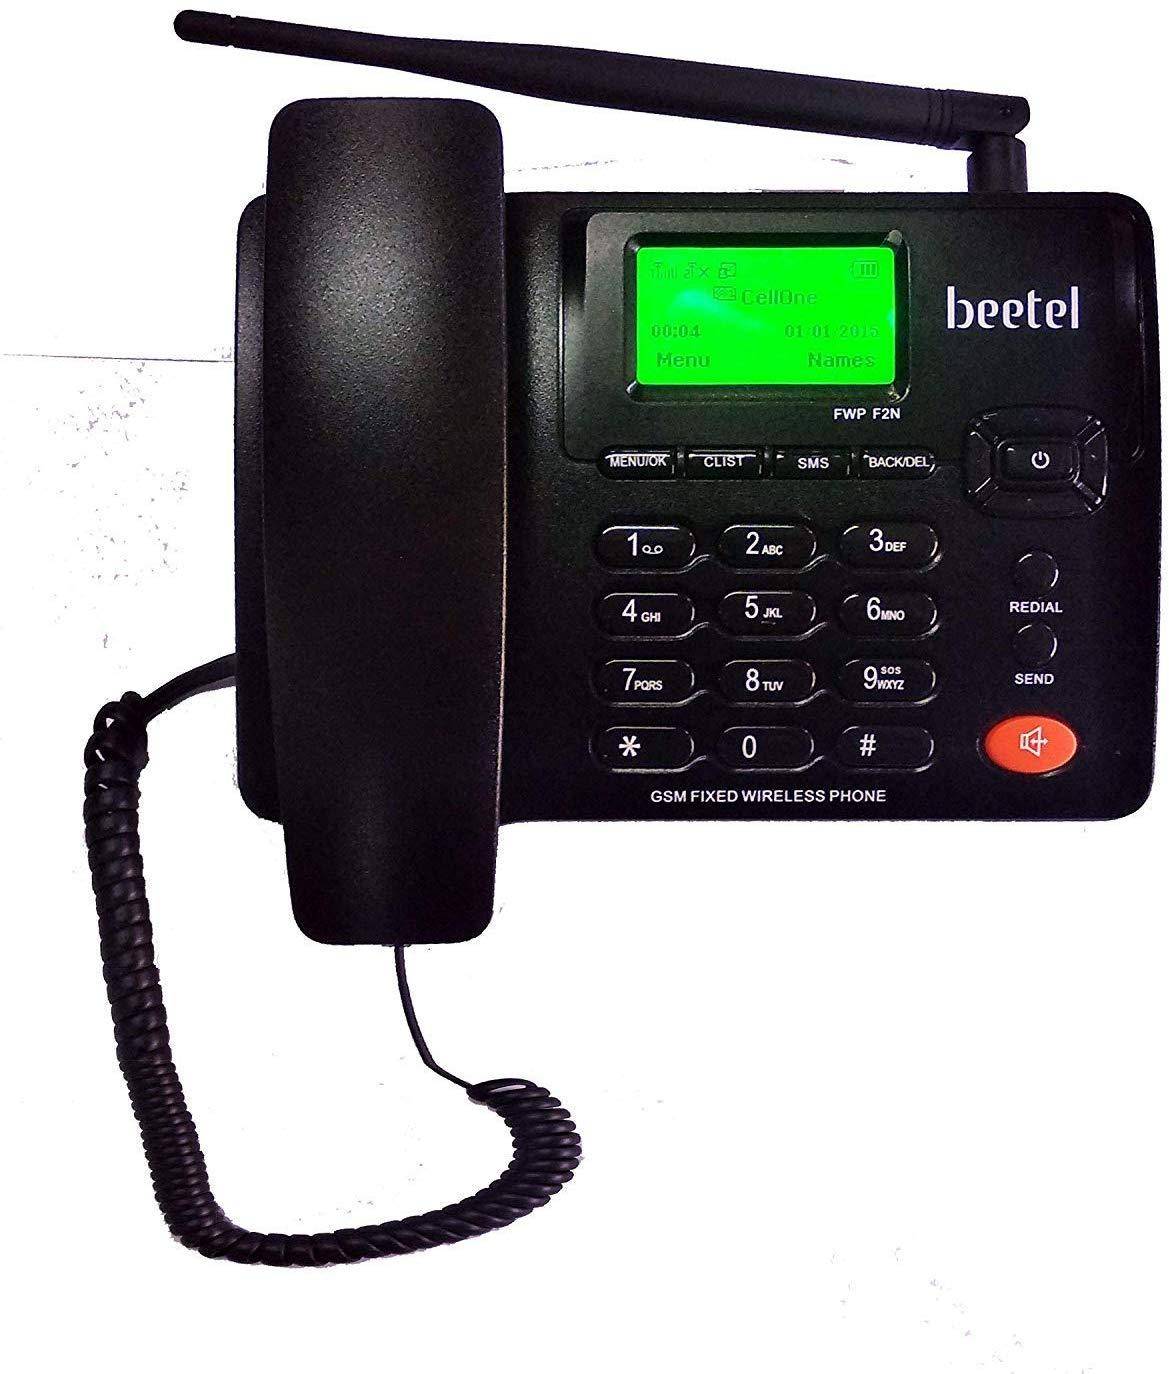 Beetel F2N Wireless Landline Phone zoom image